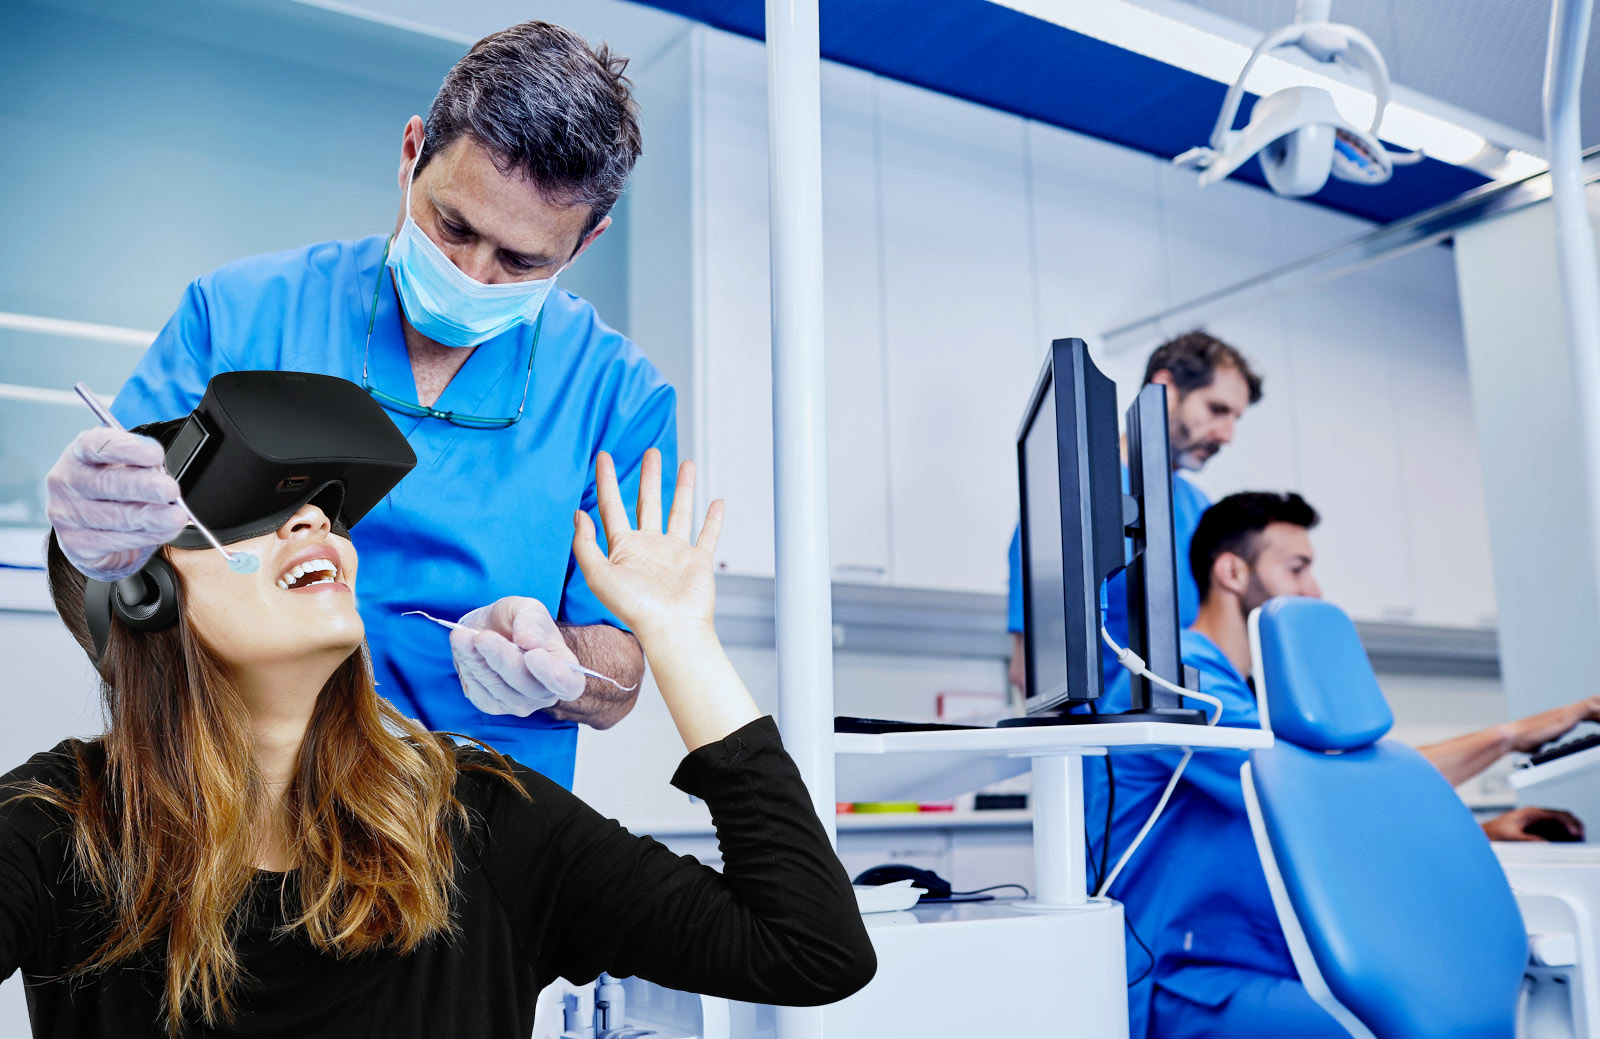 Телефон первой стоматологии. Виртуальная реальность в стоматологии. VR медицина стоматология. VR очки в стоматологии. Виртуальная реальность в медицине.